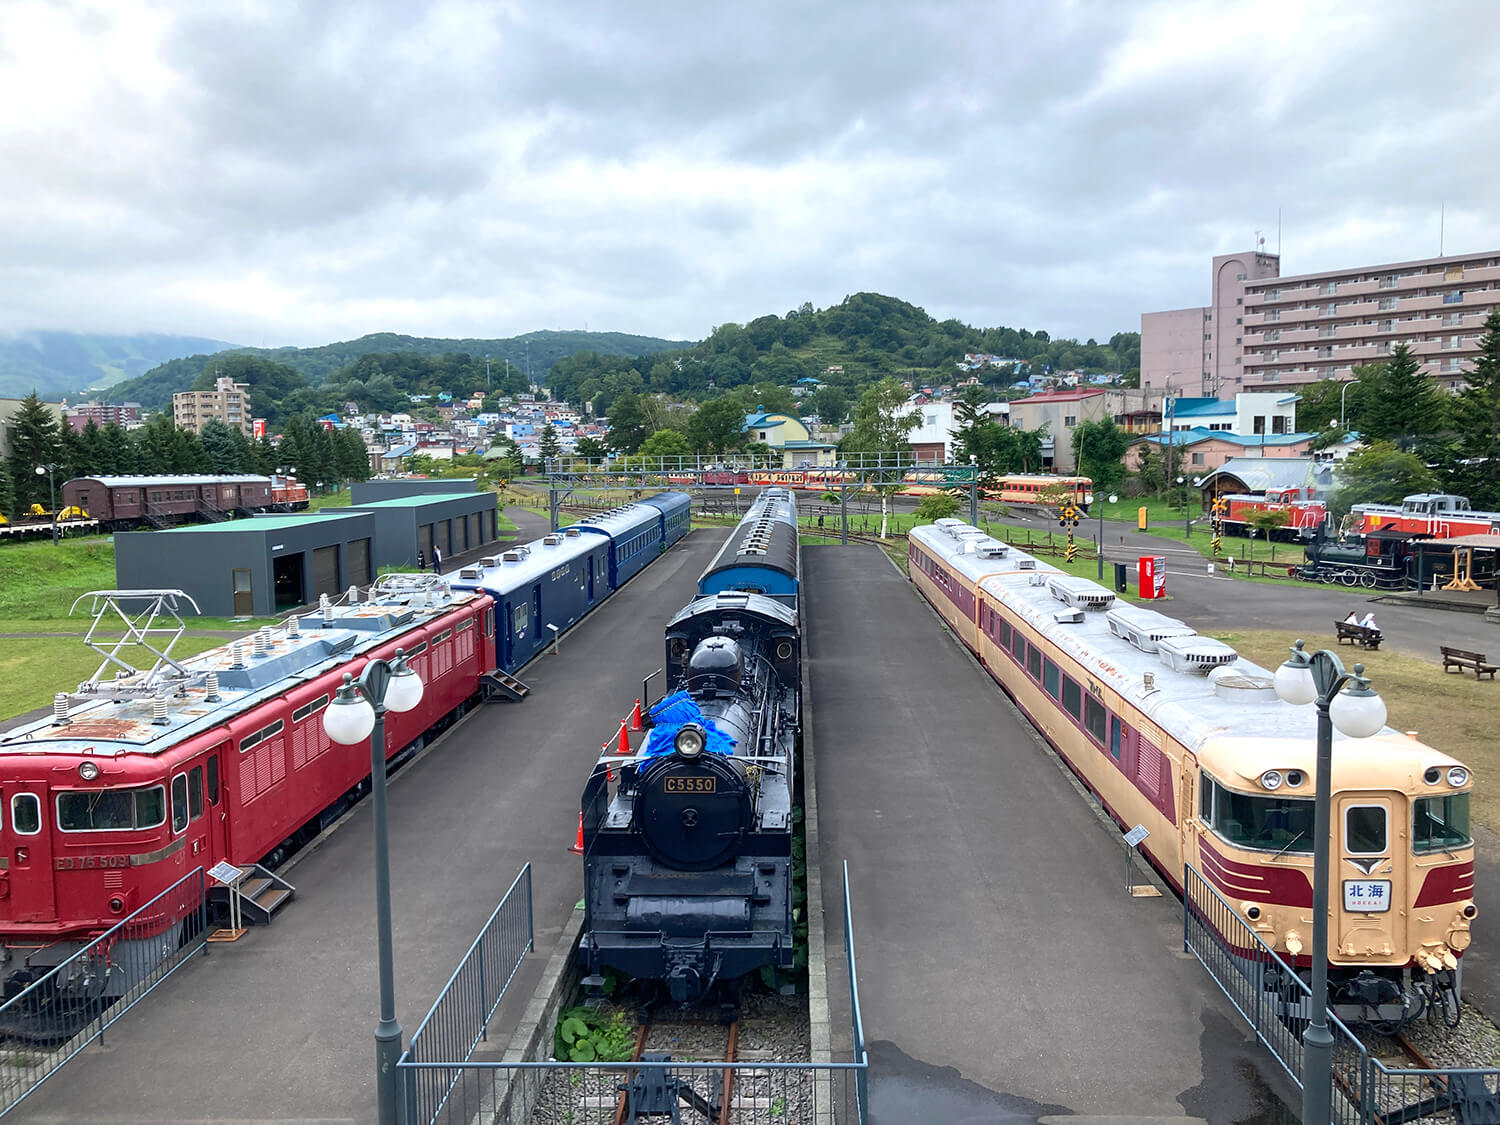 駅のホームさながらの屋外展示場には、北海道で活躍した懐かしい鉄道車両が並ぶ